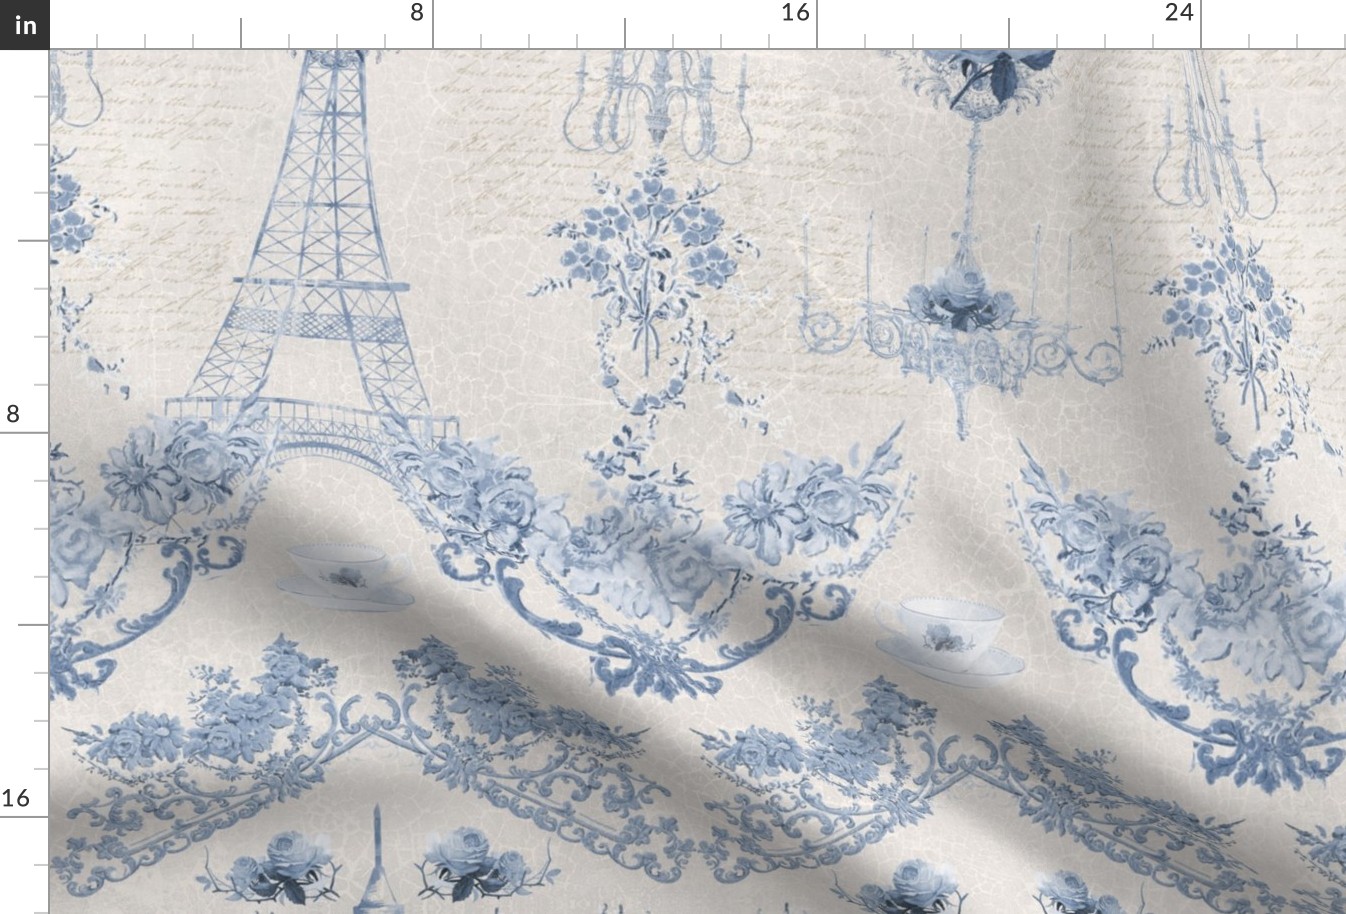 Elegant Paris Parisian Floral Eiffel Tower in Blue by Audrey Jeanne